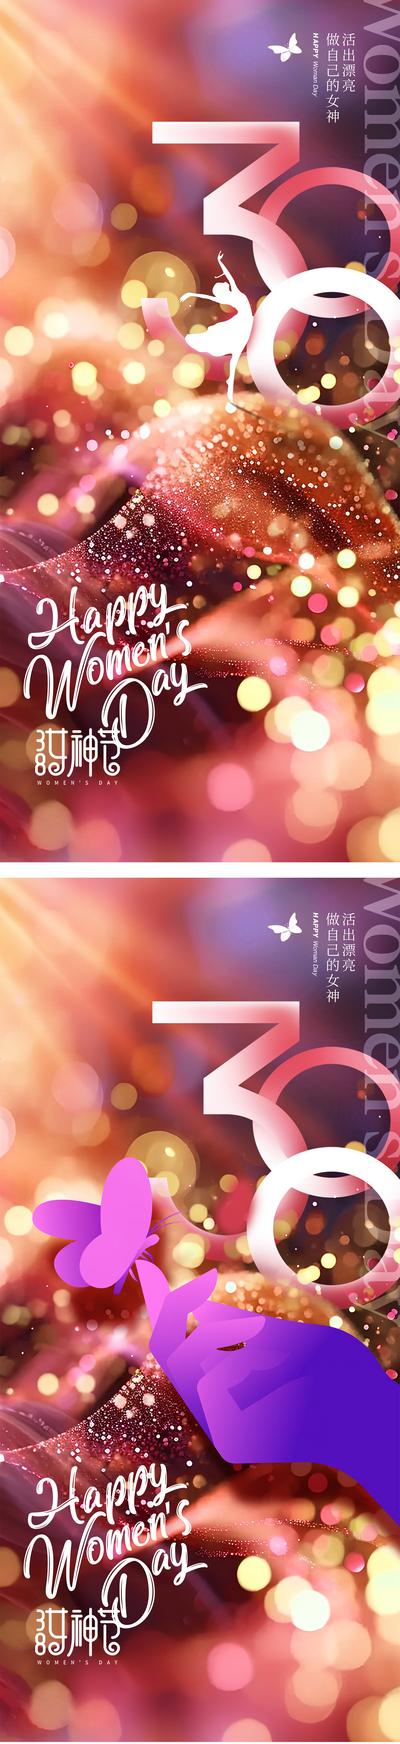 南门网 妇女节女神节海报